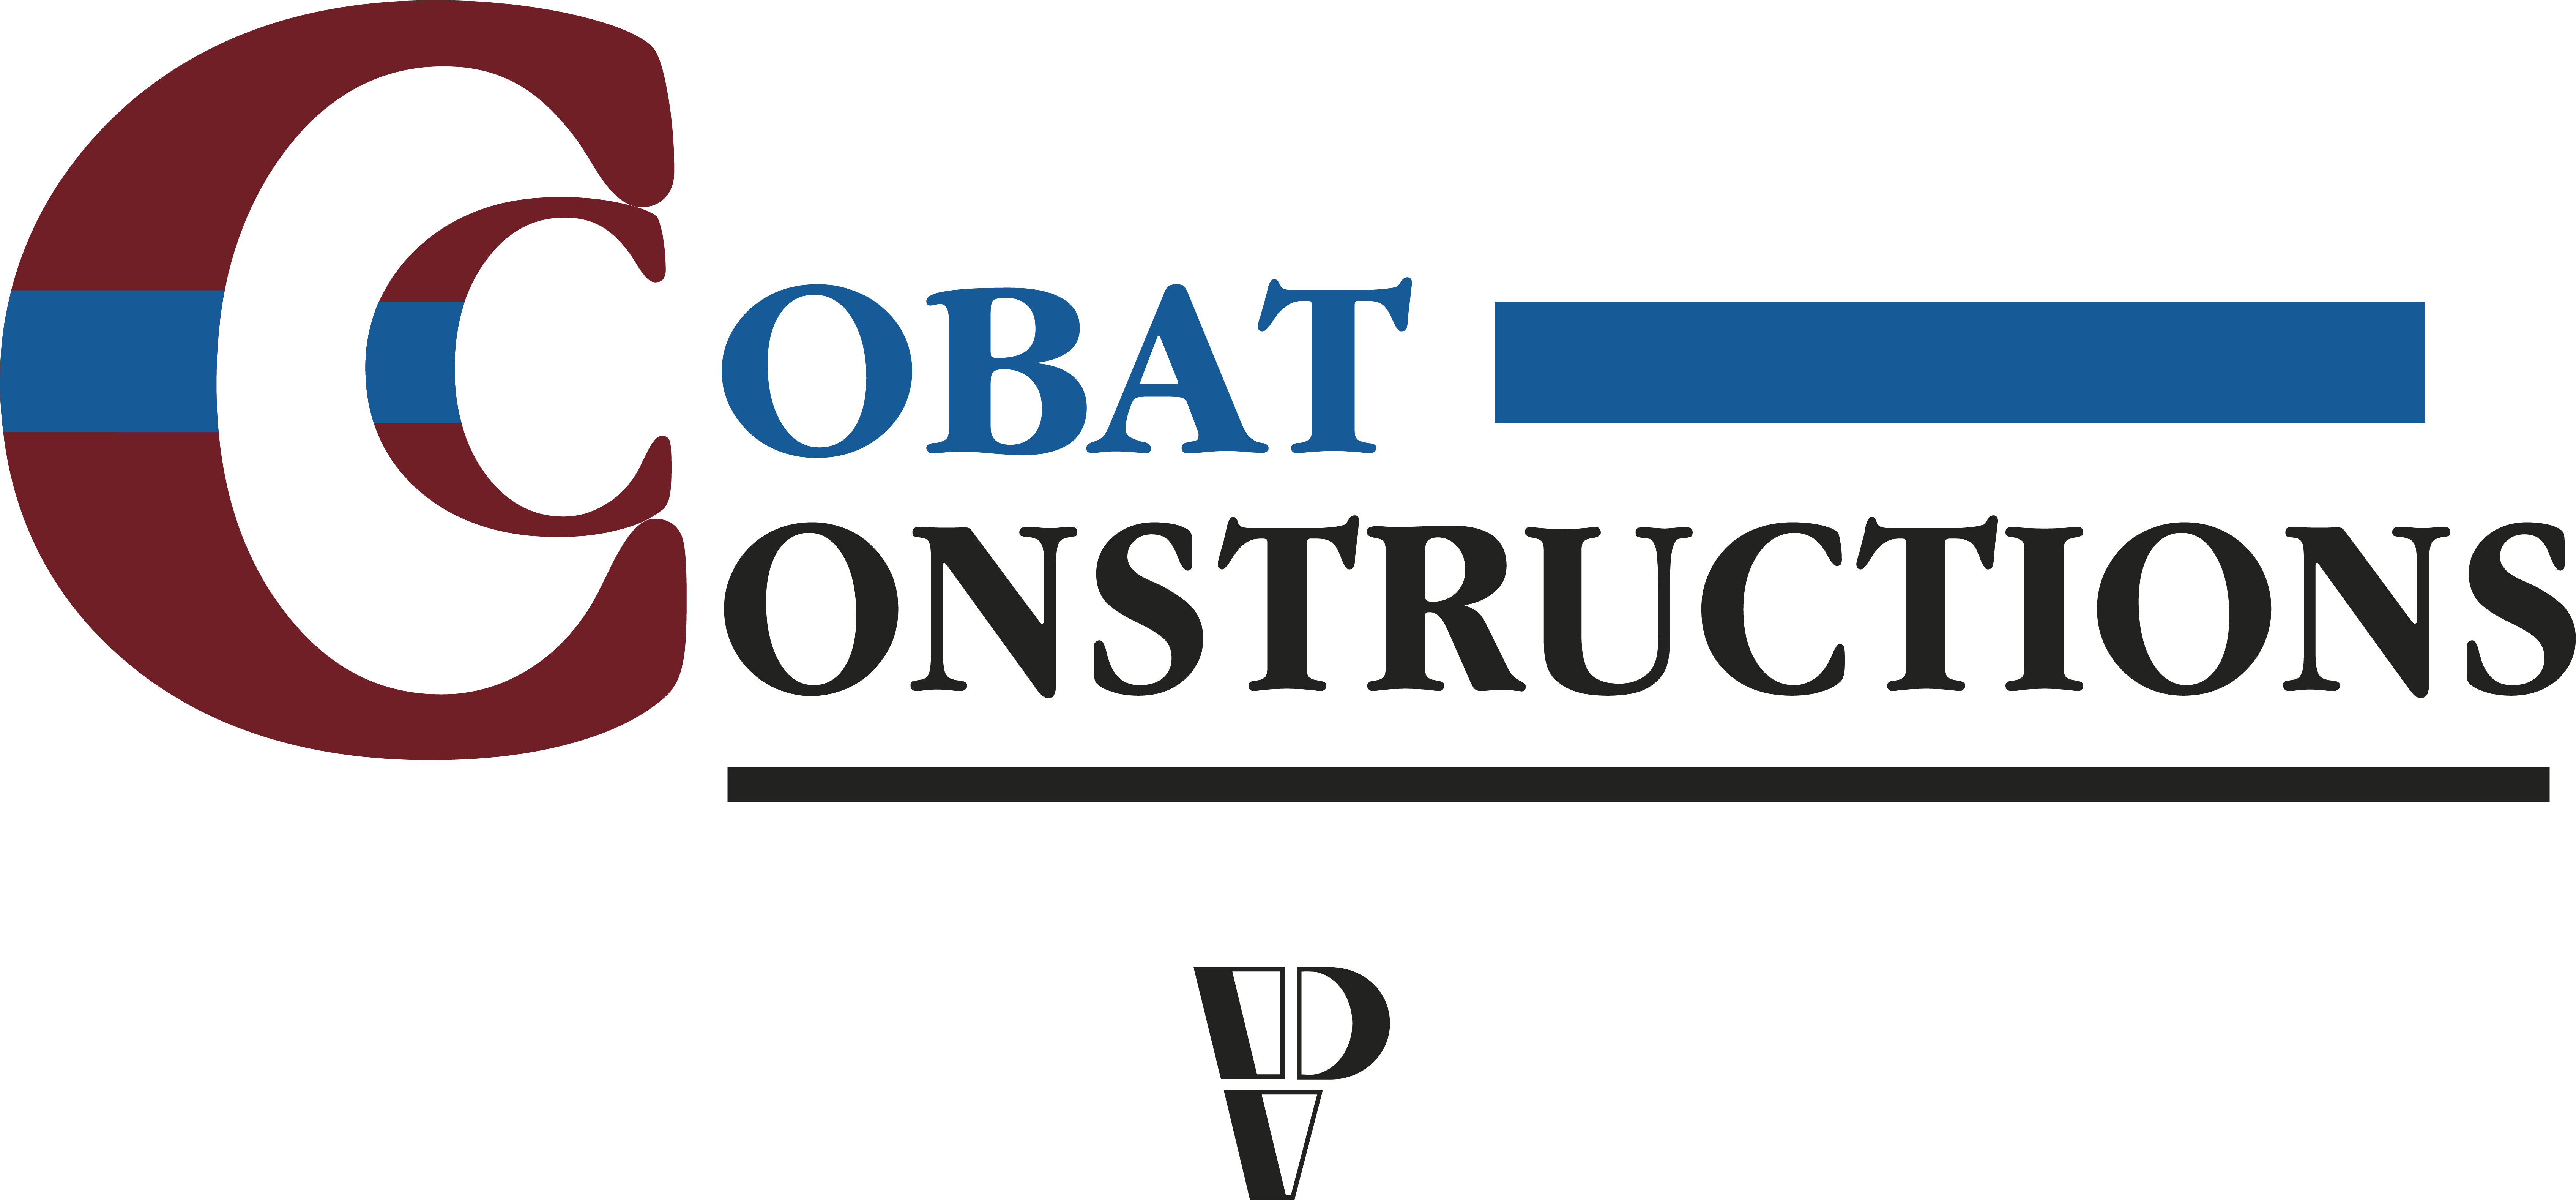 Cobat Constructions